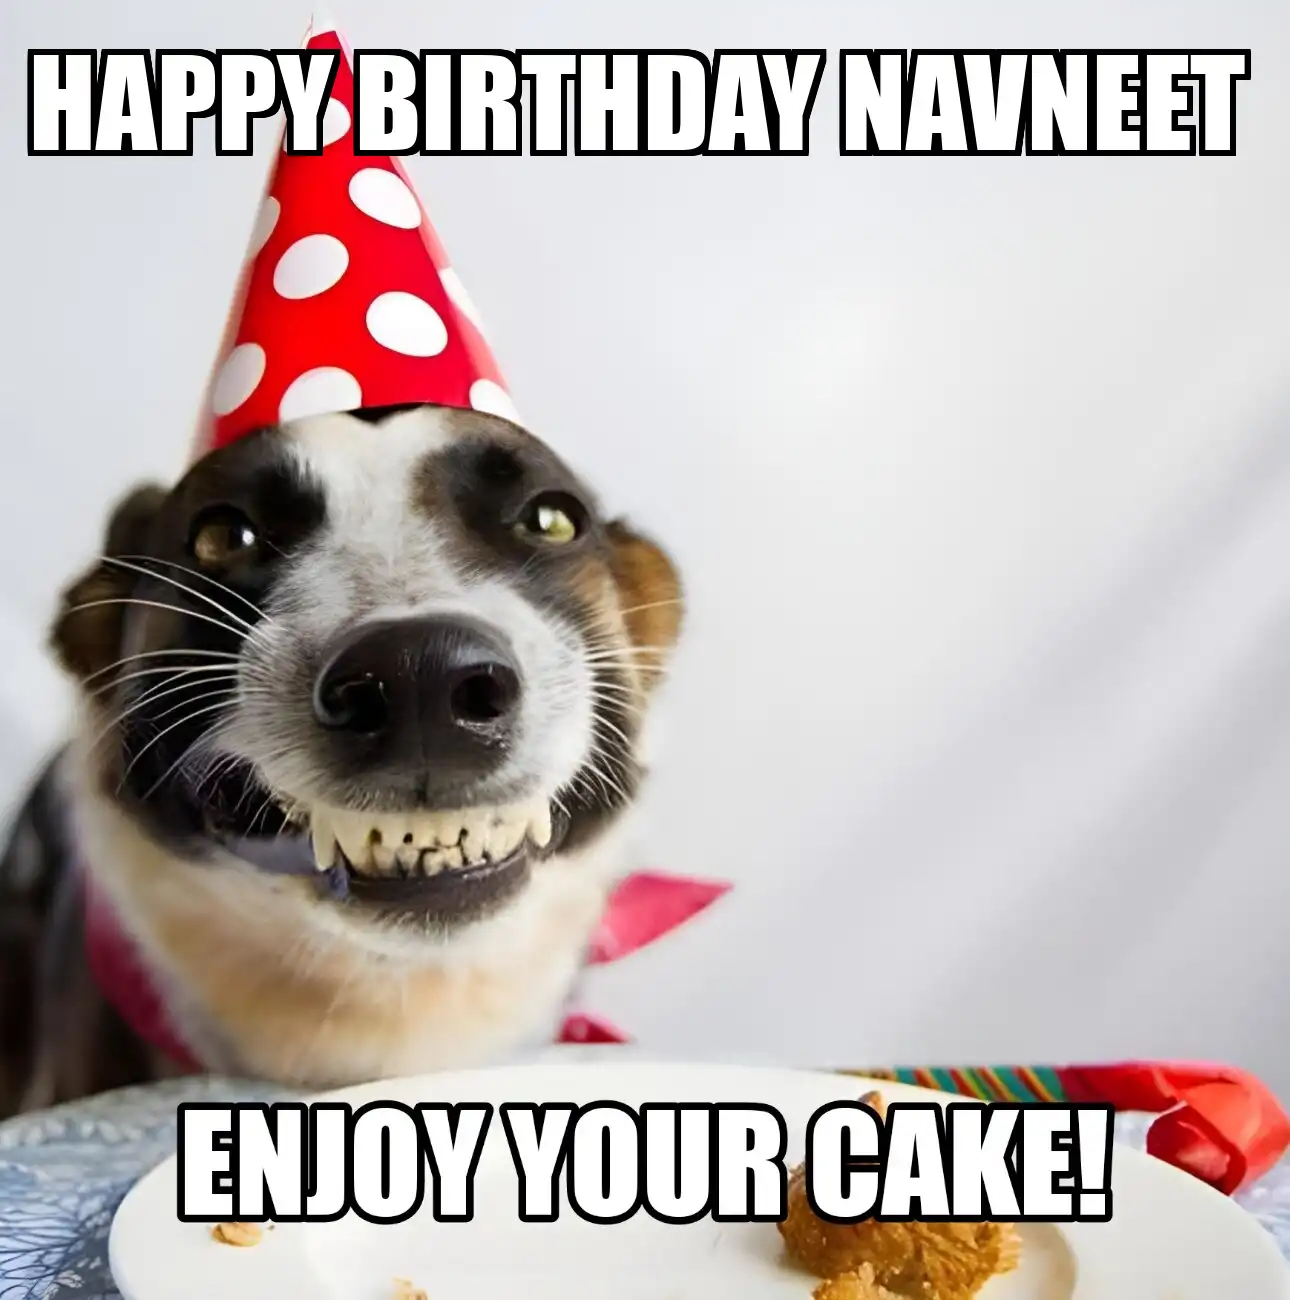 Happy Birthday Navneet Enjoy Your Cake Dog Meme